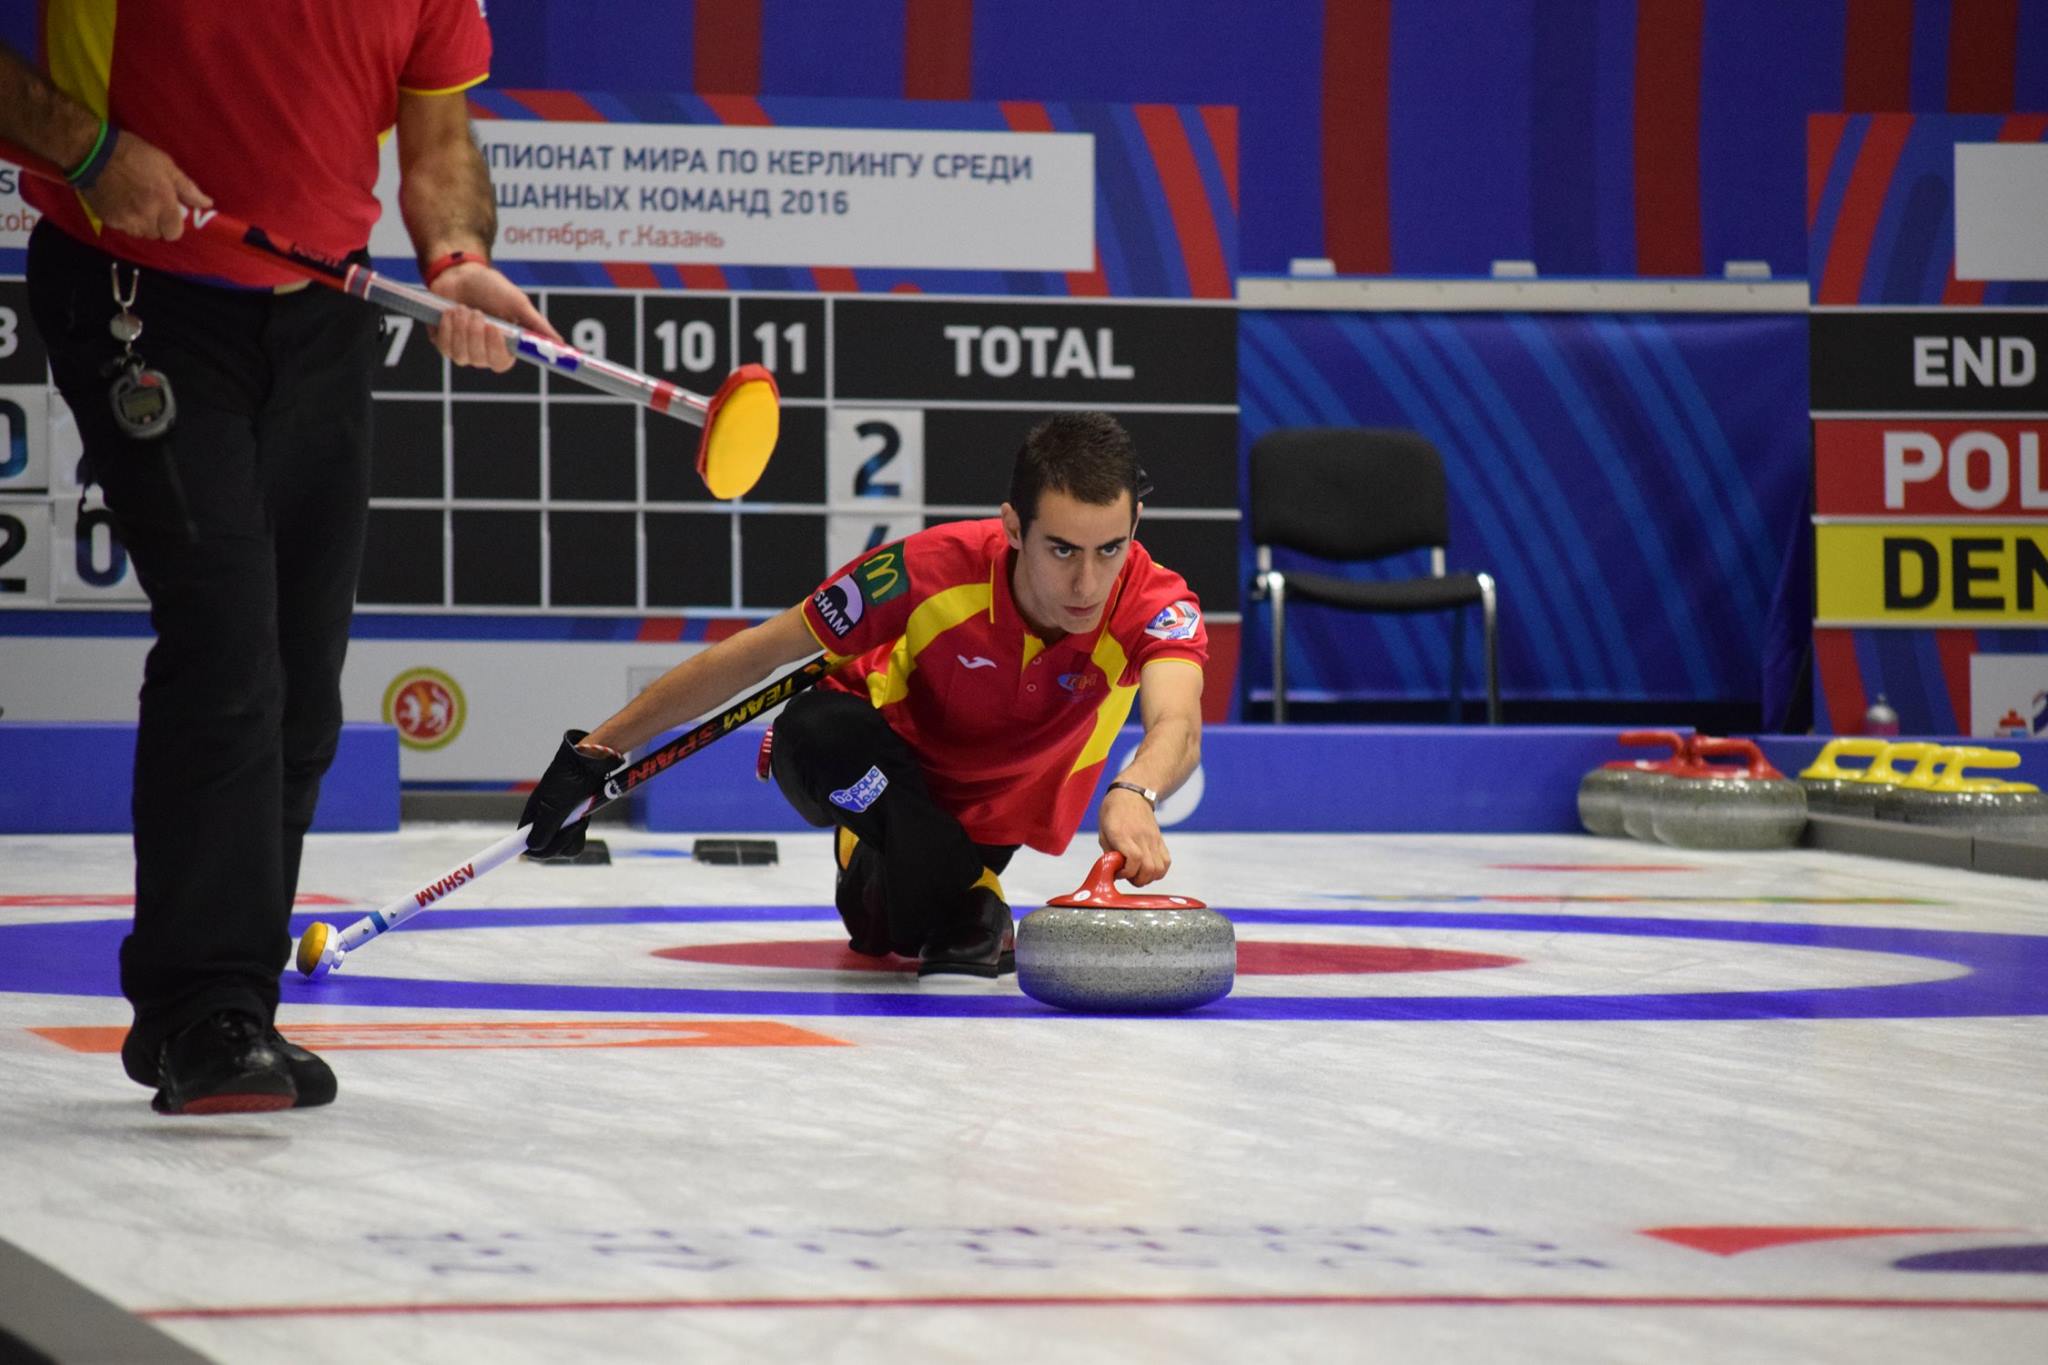 , España vence a Kazajstan en el Mundial Mixto de Curling, Real Federación Española Deportes de Hielo